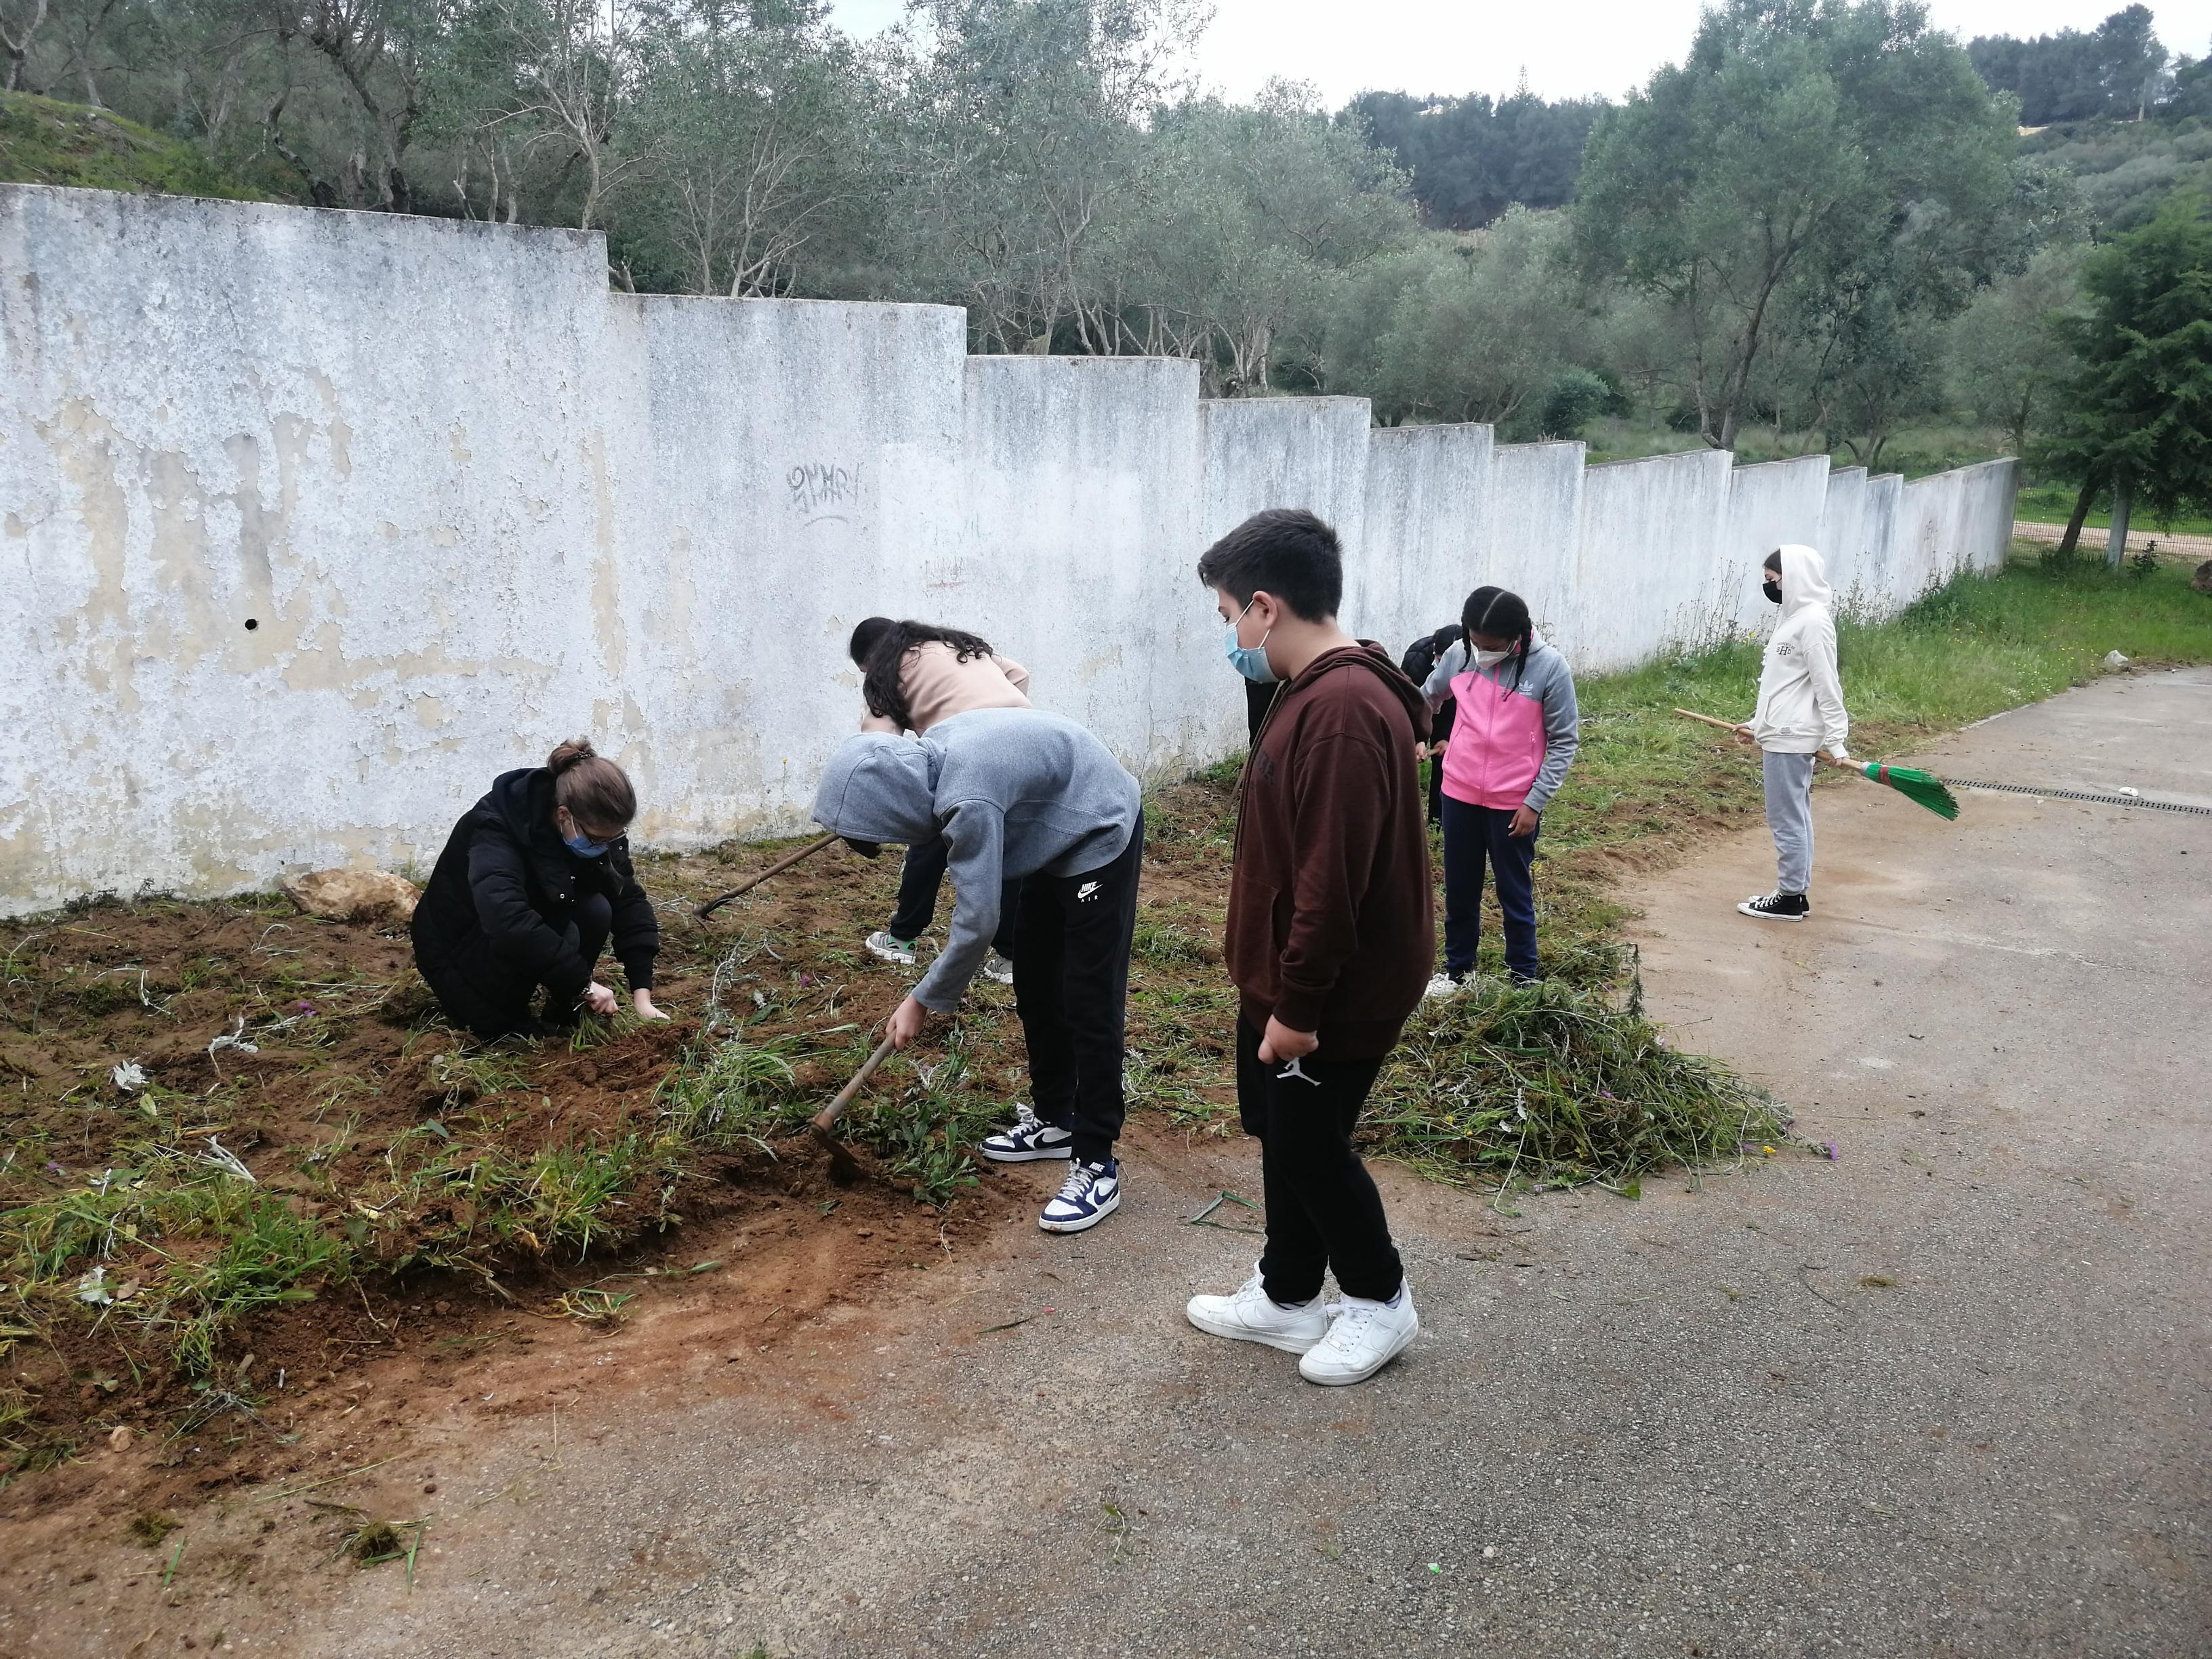 1ª fase da horta-retirada de ervas daninhas e preparação do terreno - alunos